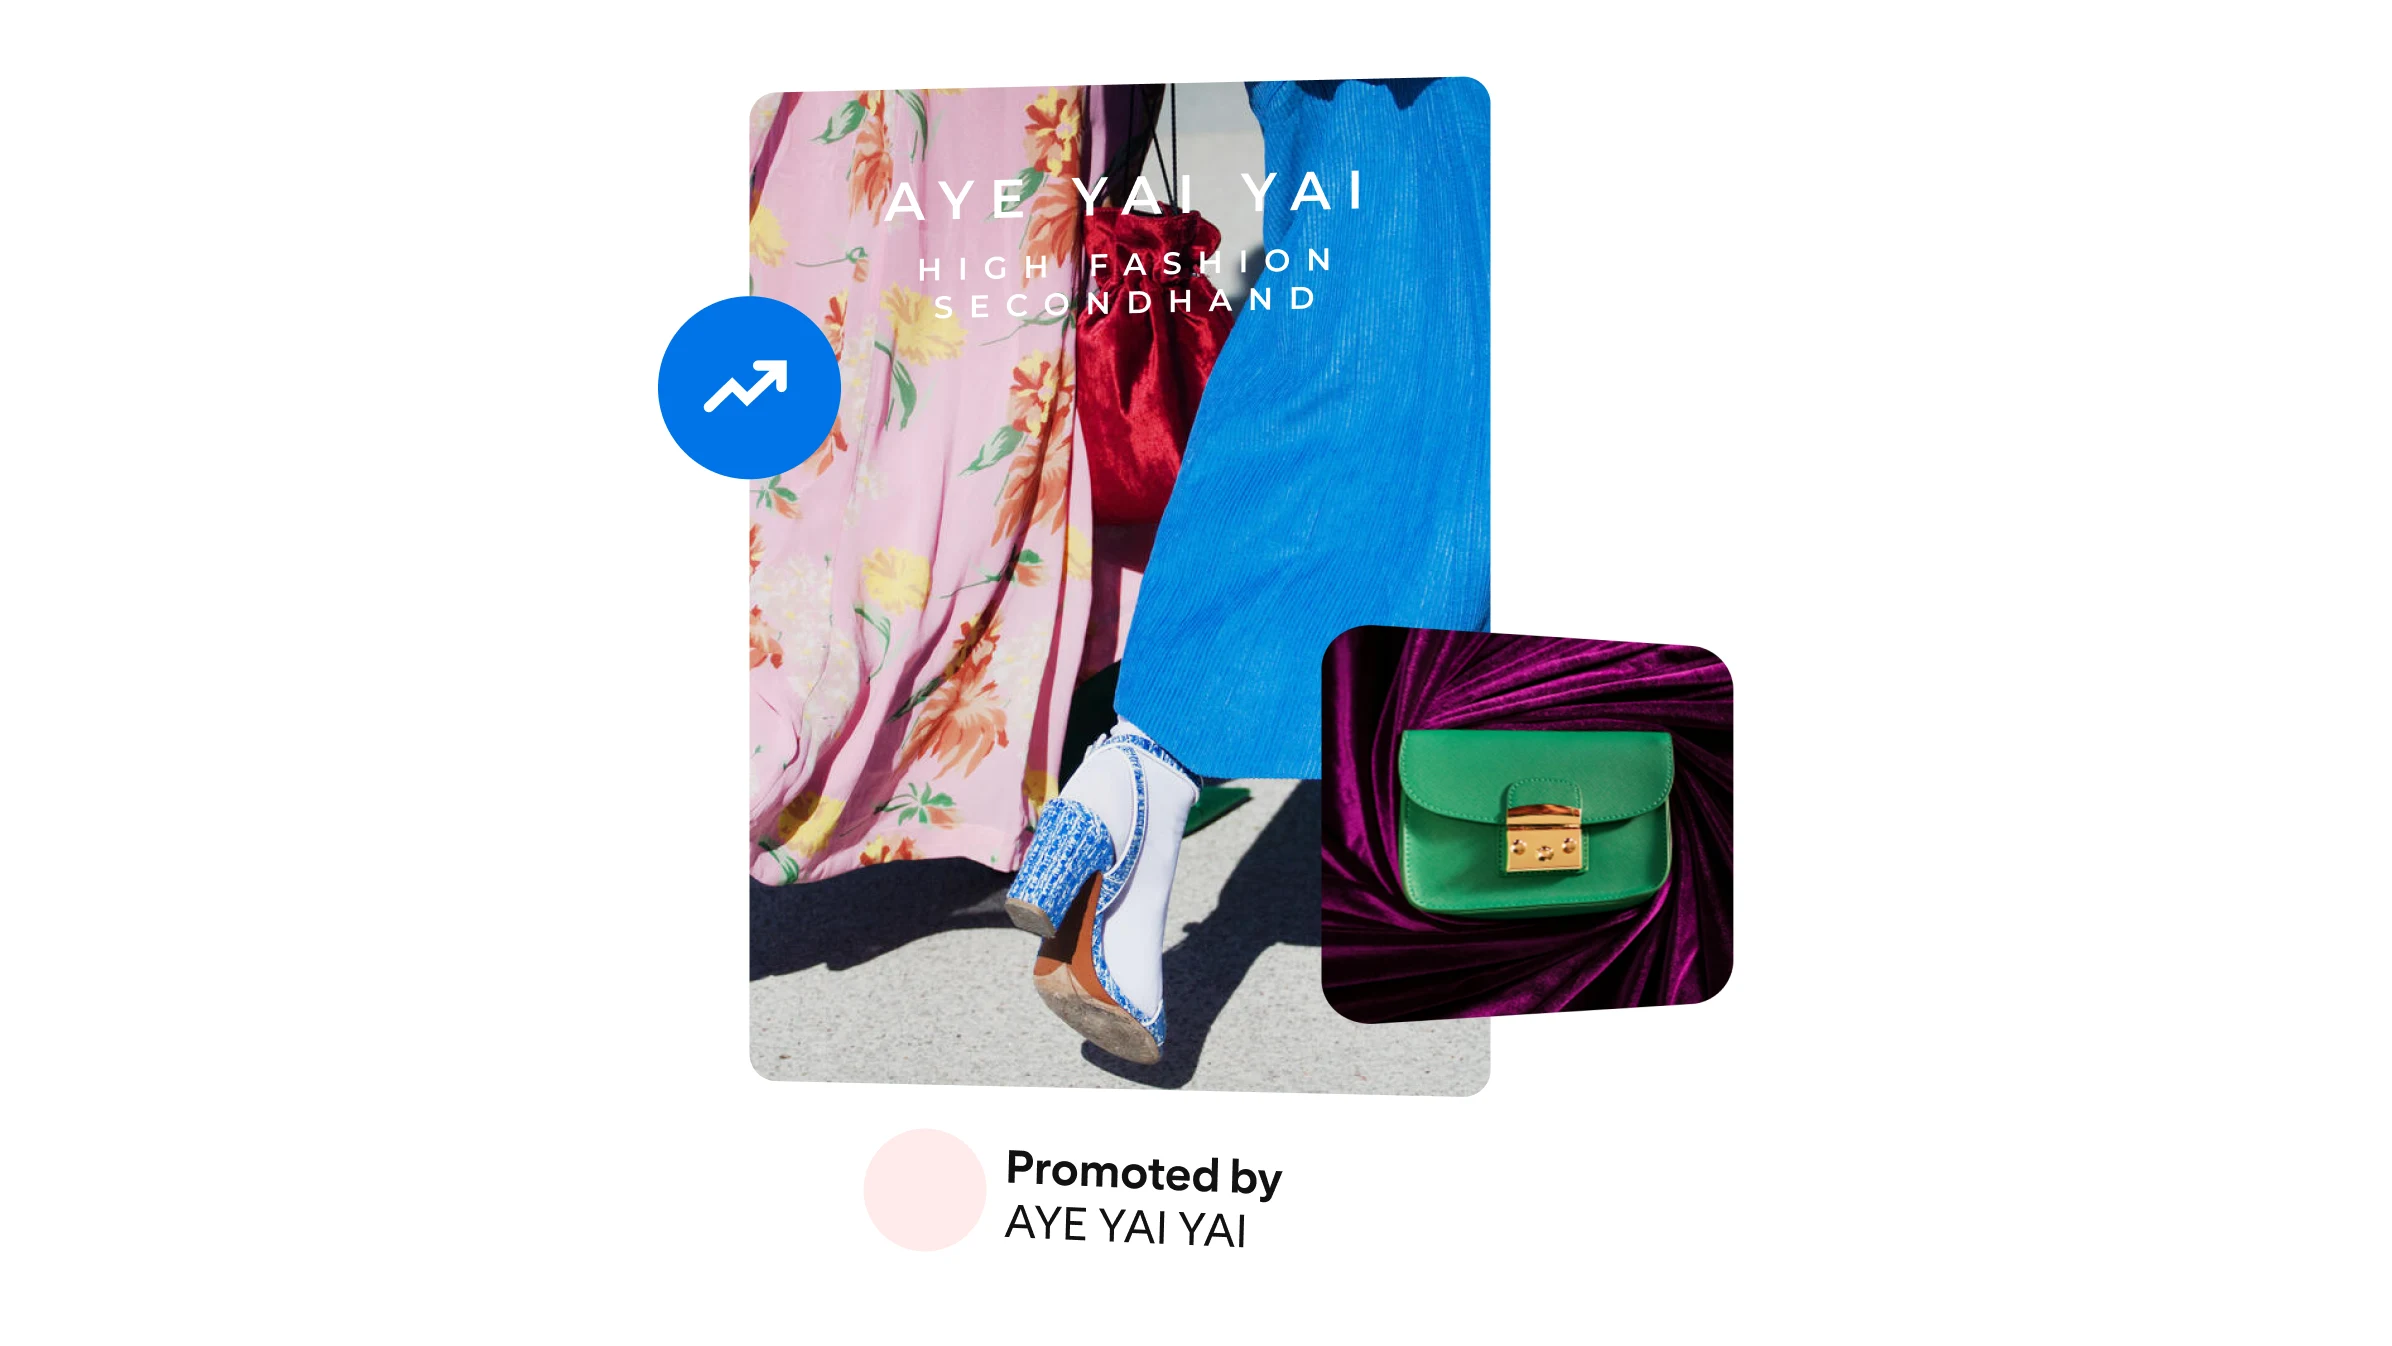 A fashion ad from Aye Yai Yai shows a green purse.